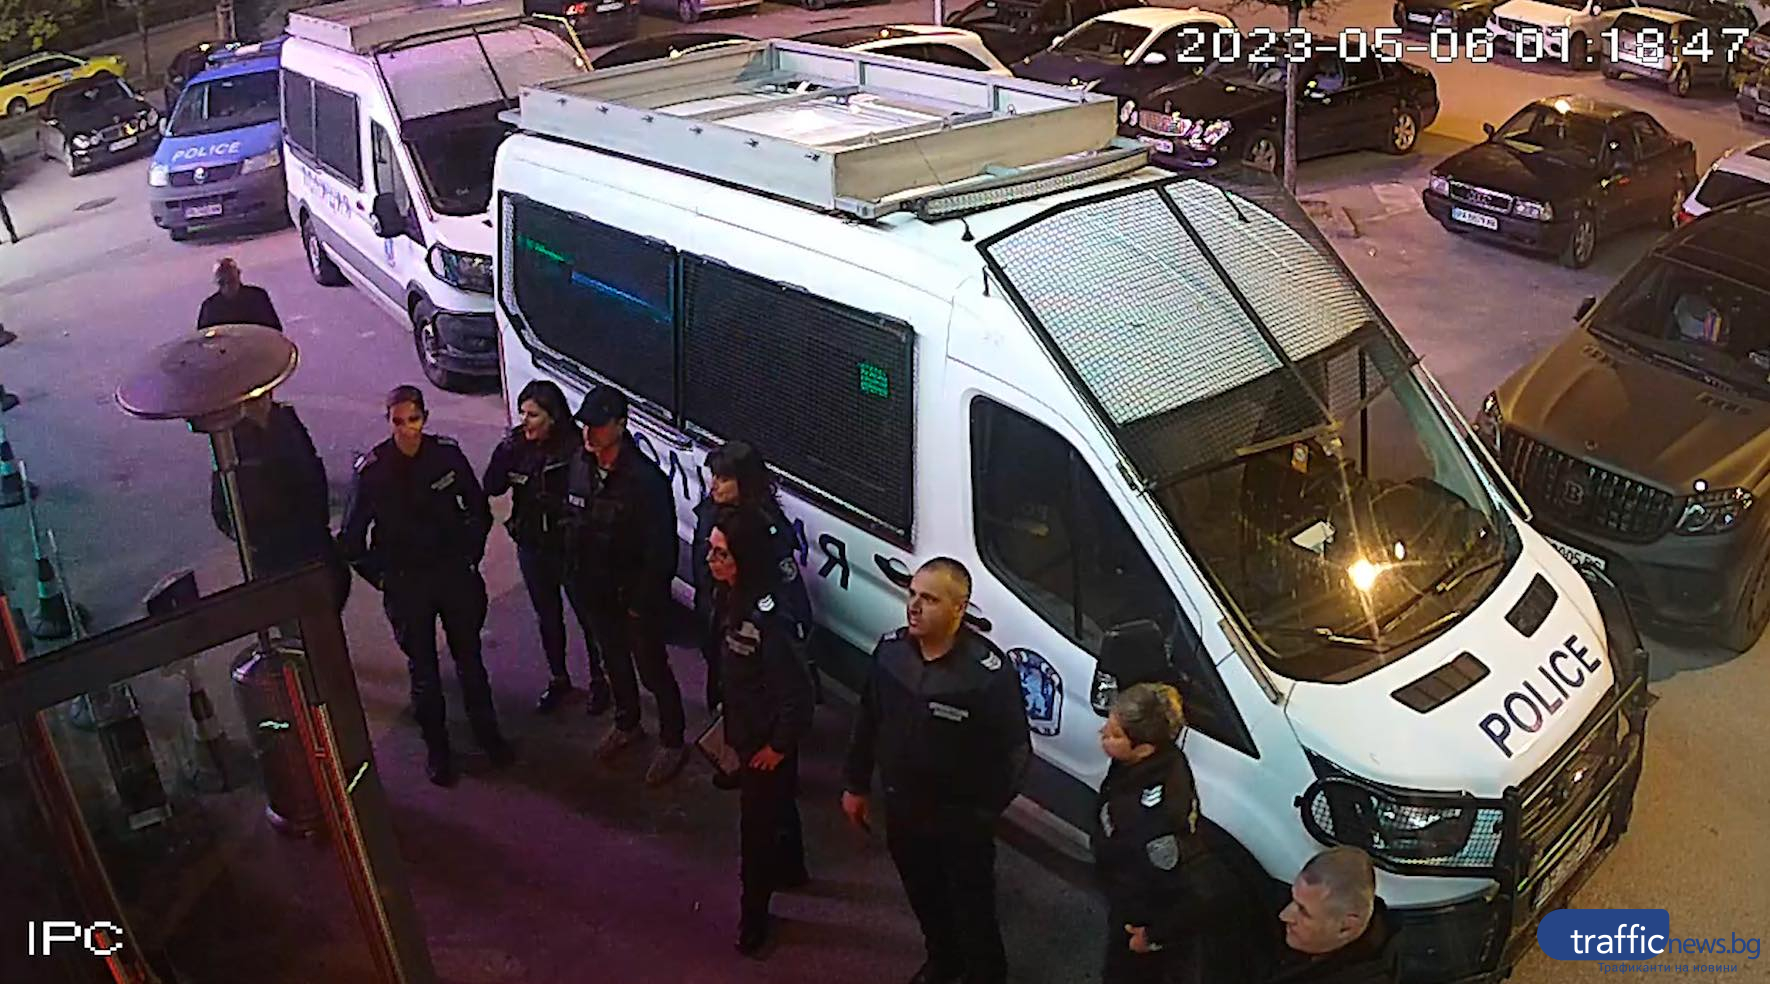 Започва дисциплинарна проверка срещу шестима полицаи от ОДМВР Пловдив заради акция